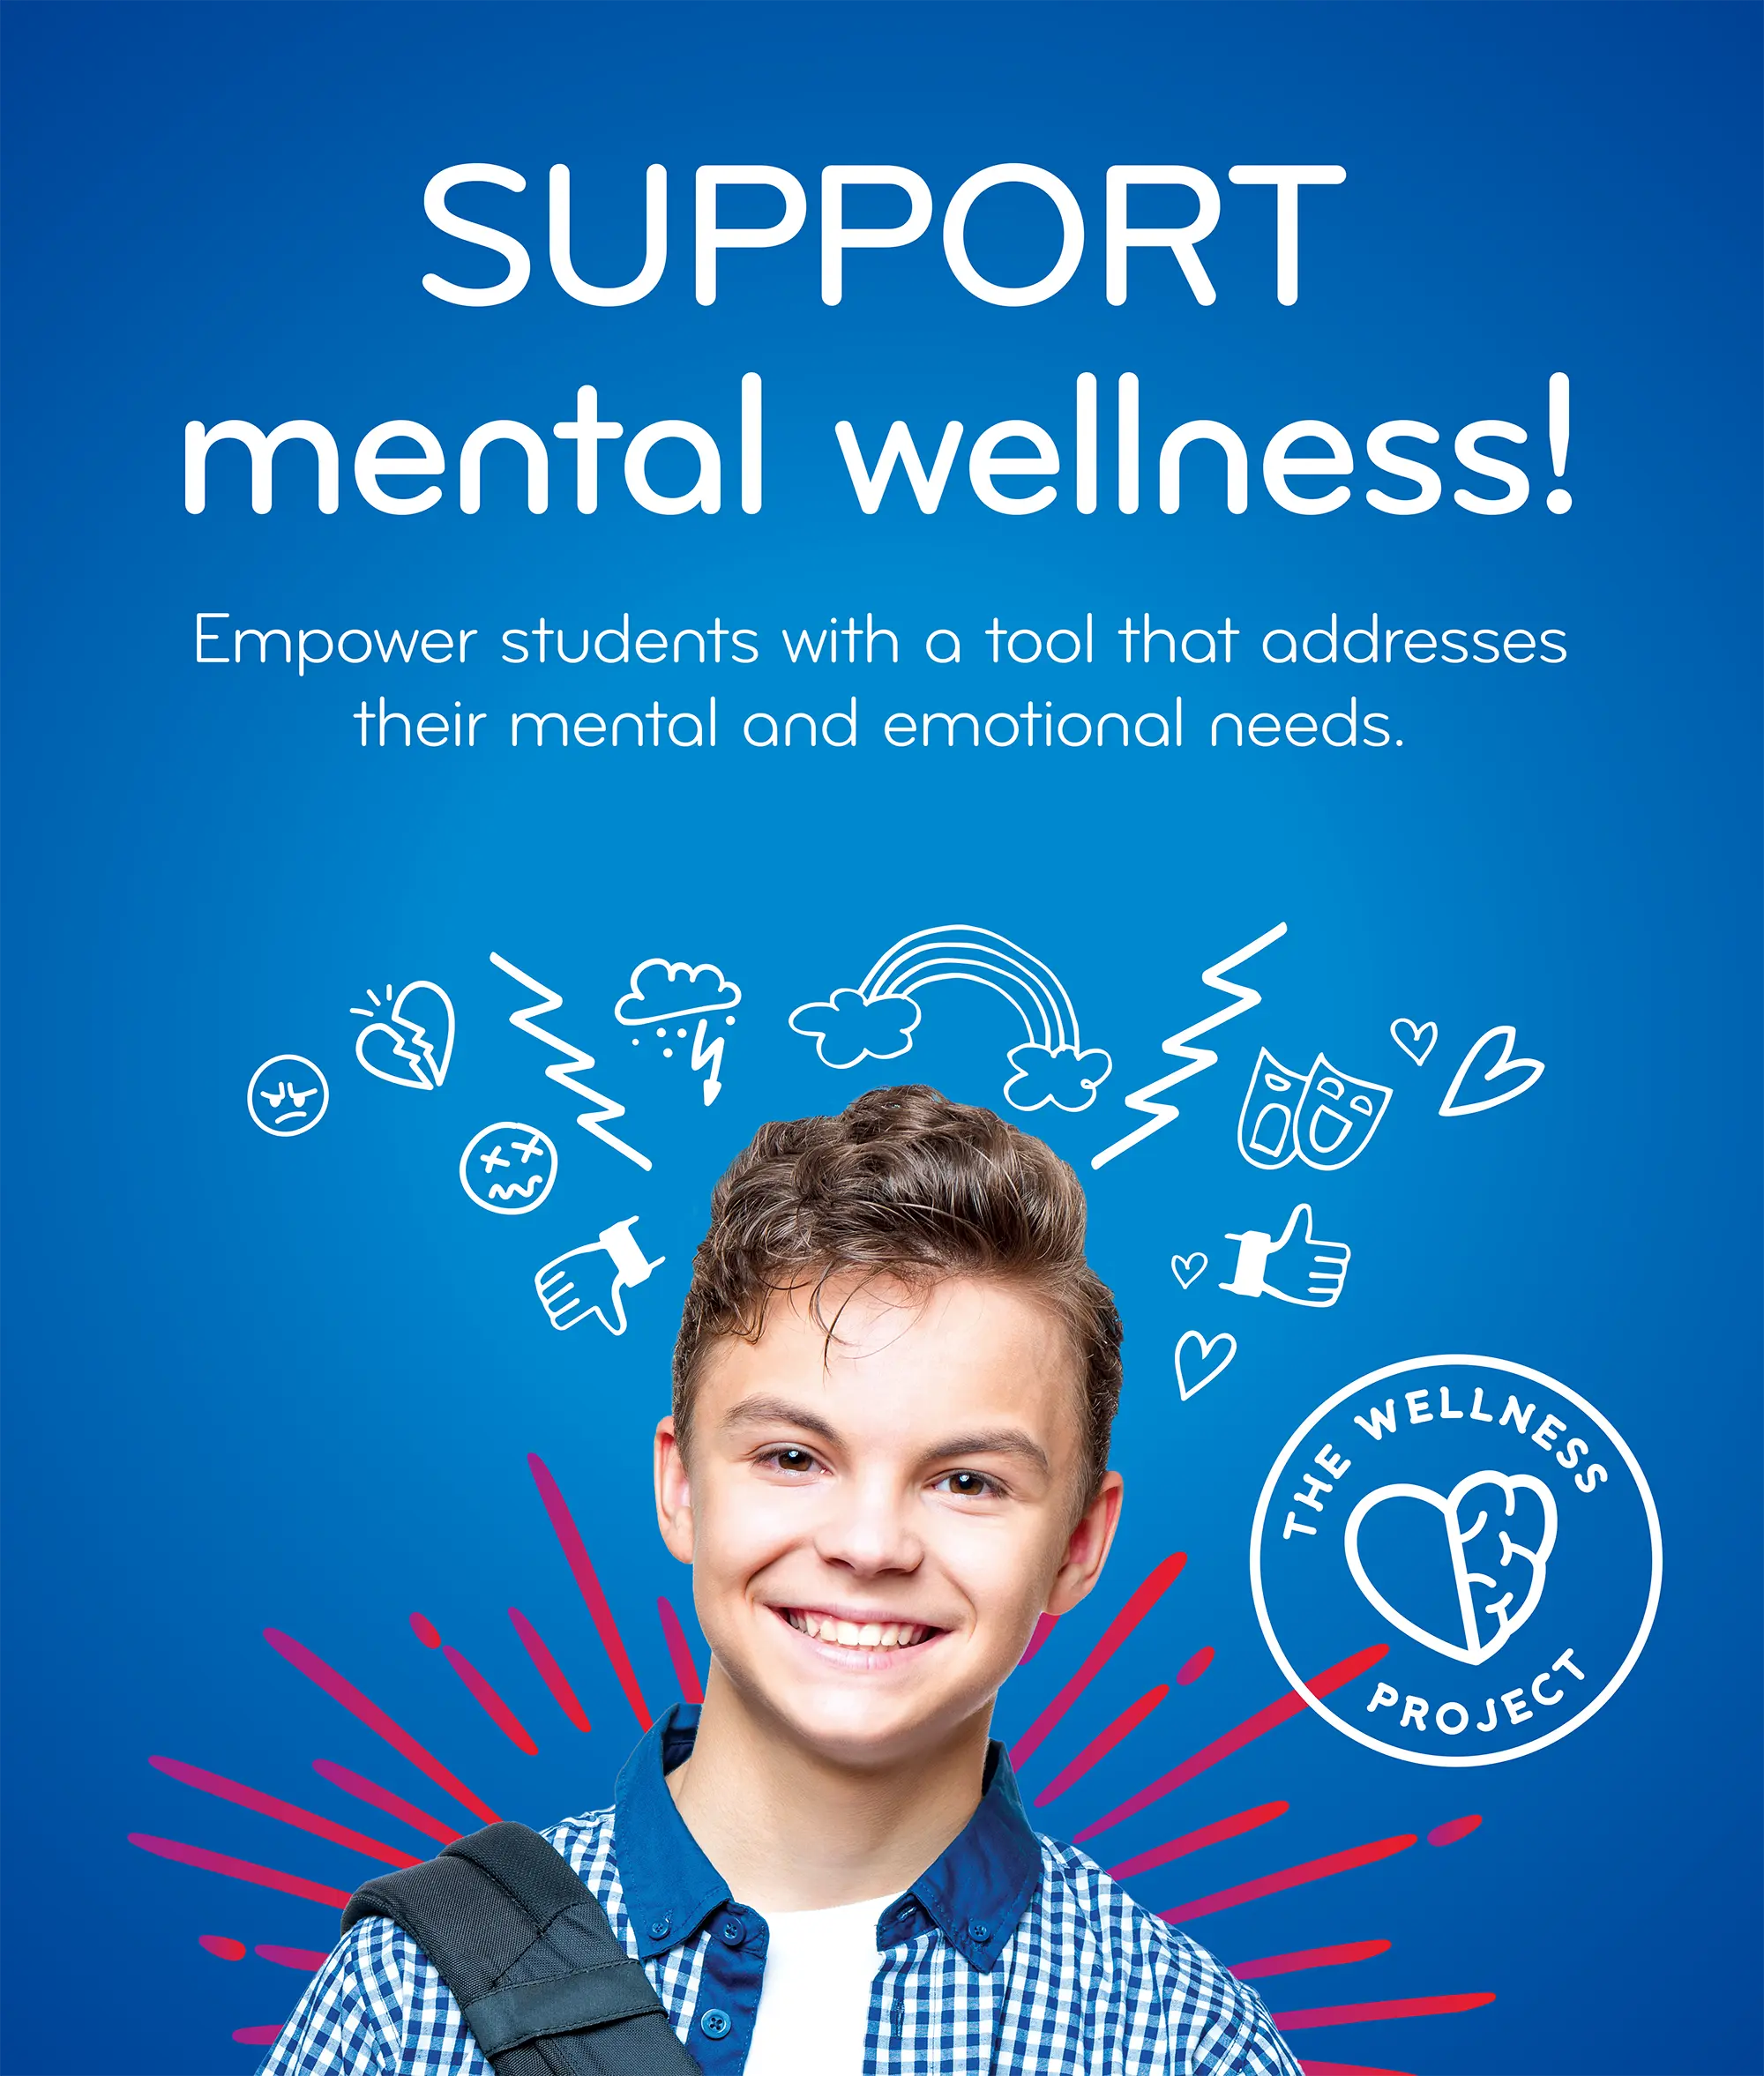 SUPPORT mental wellness!